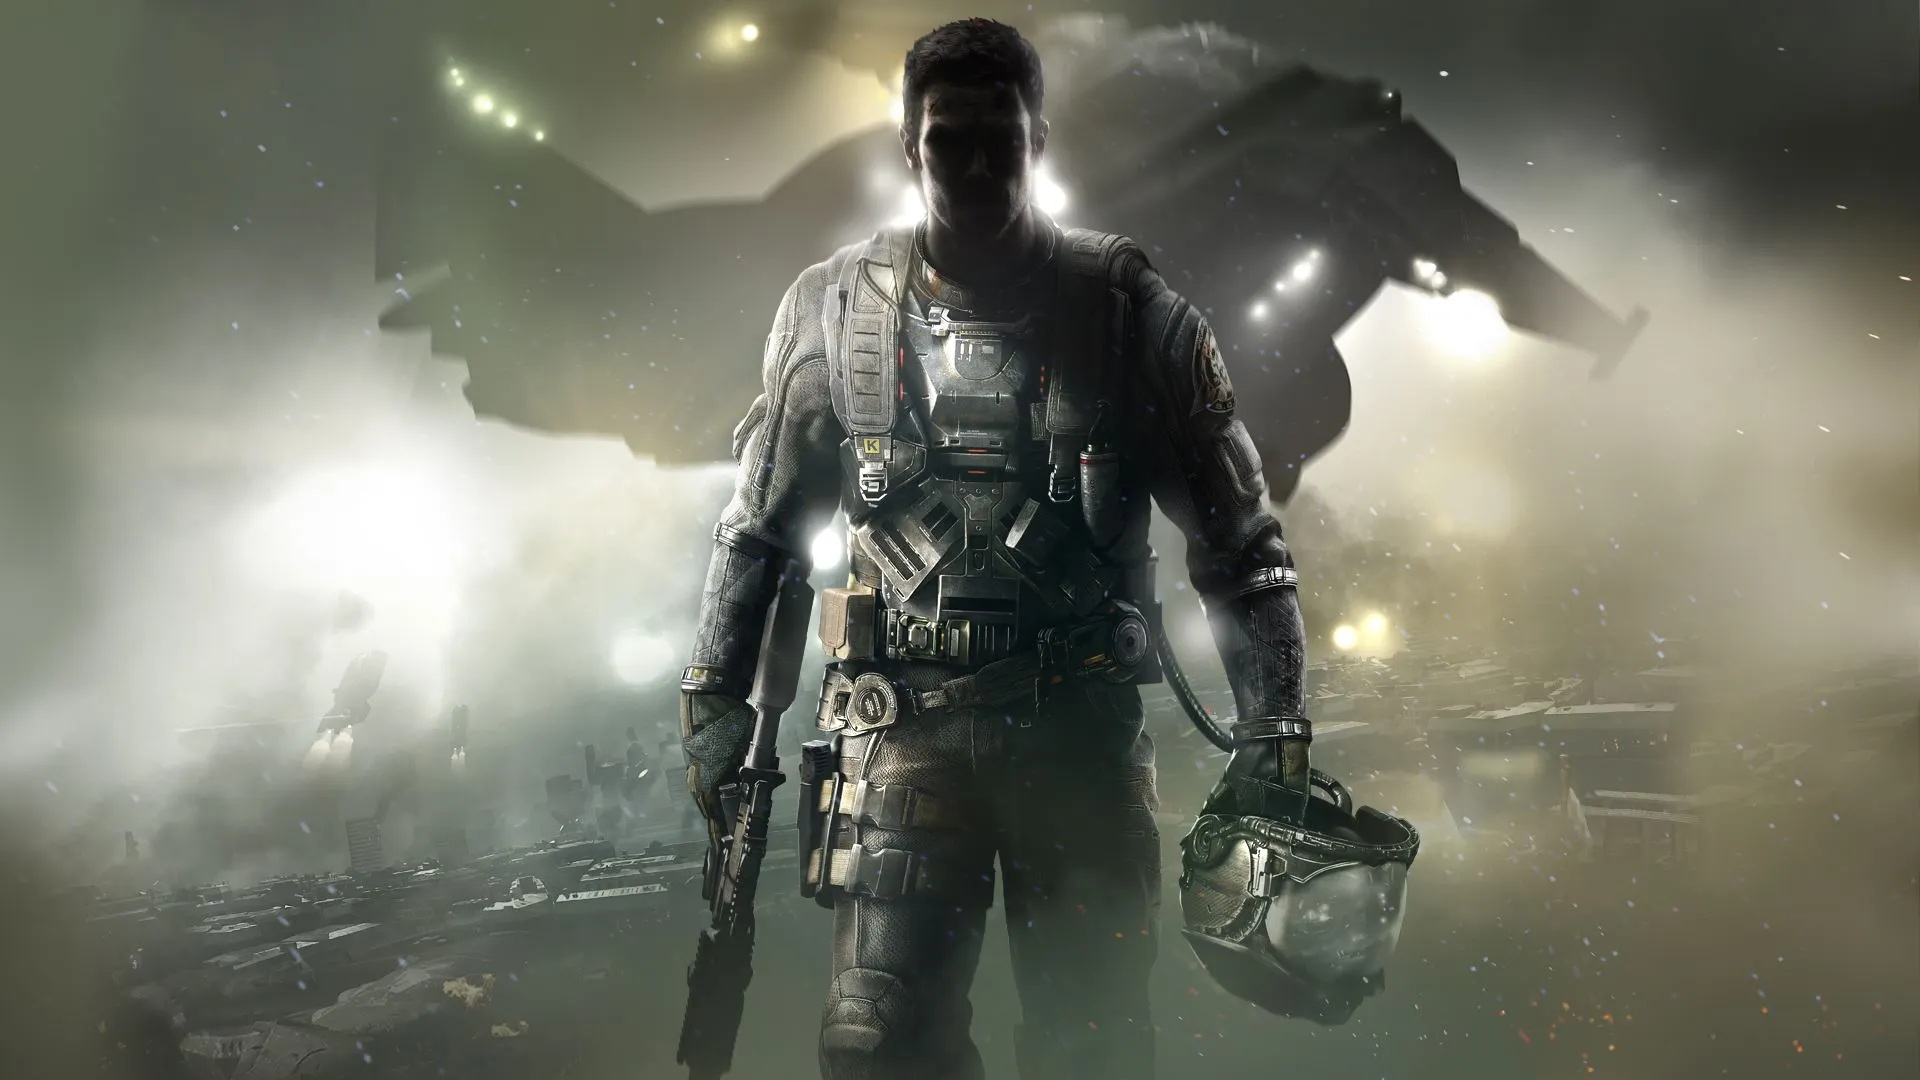 COD Infinite Warfare MP Rig Warfighter Complete Call of Duty